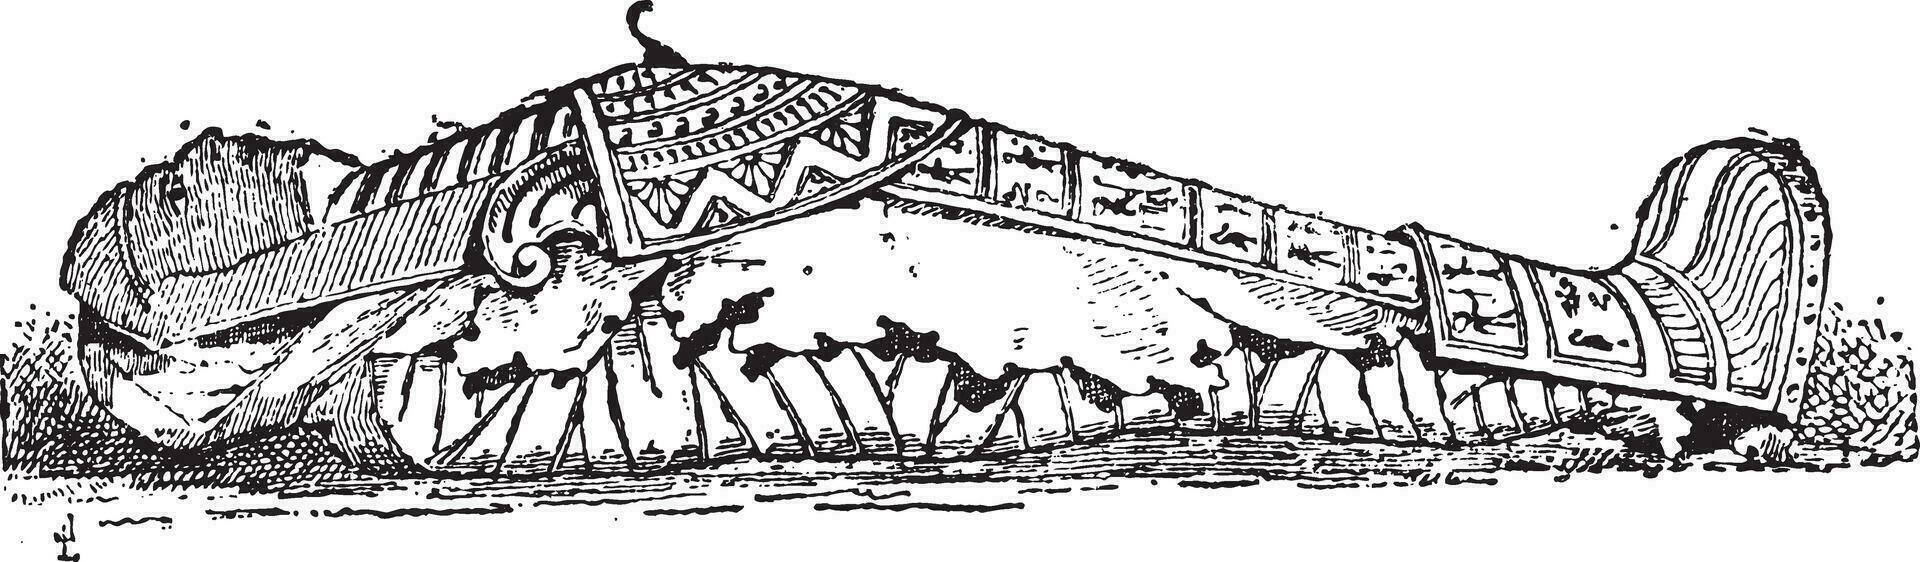 le sarcophage de Momie ancien gravure vecteur